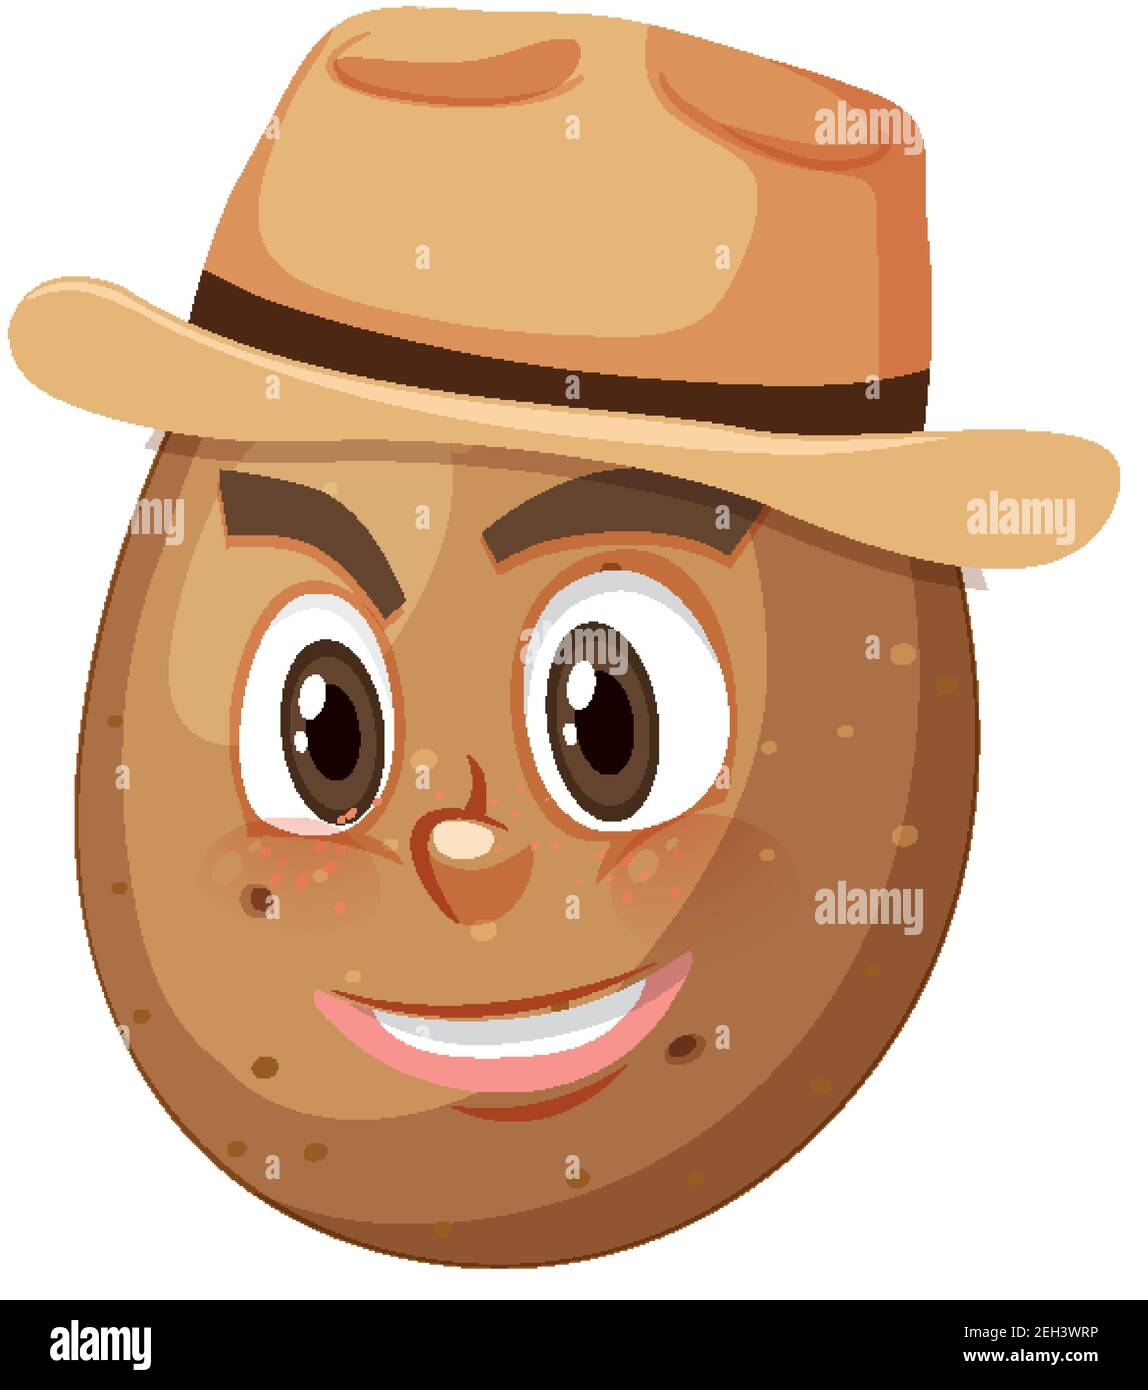 Personnage de dessin animé de pomme de terre avec illustration d'expression faciale Illustration de Vecteur